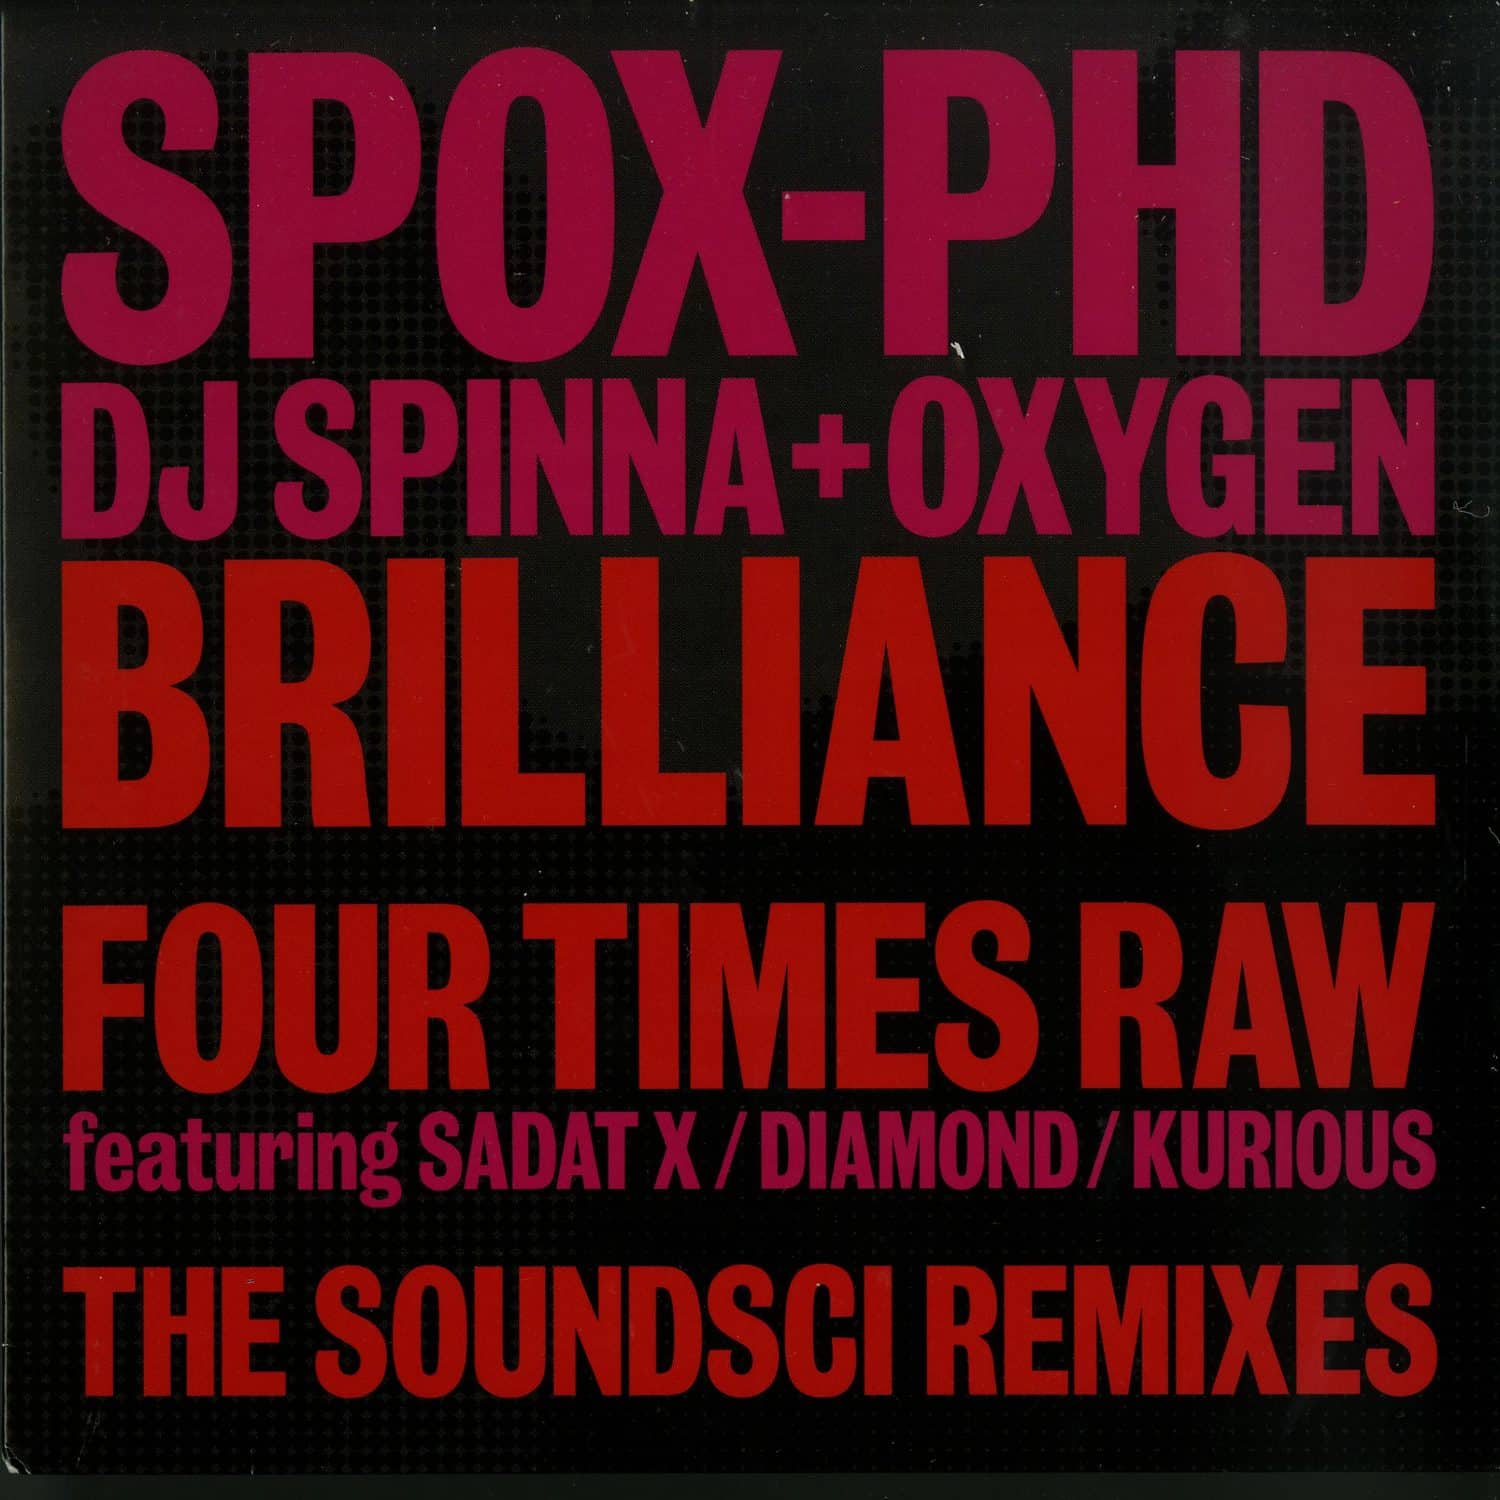 SPOX PhD  - BRILLIANCE / FOUR TIMES RAW 